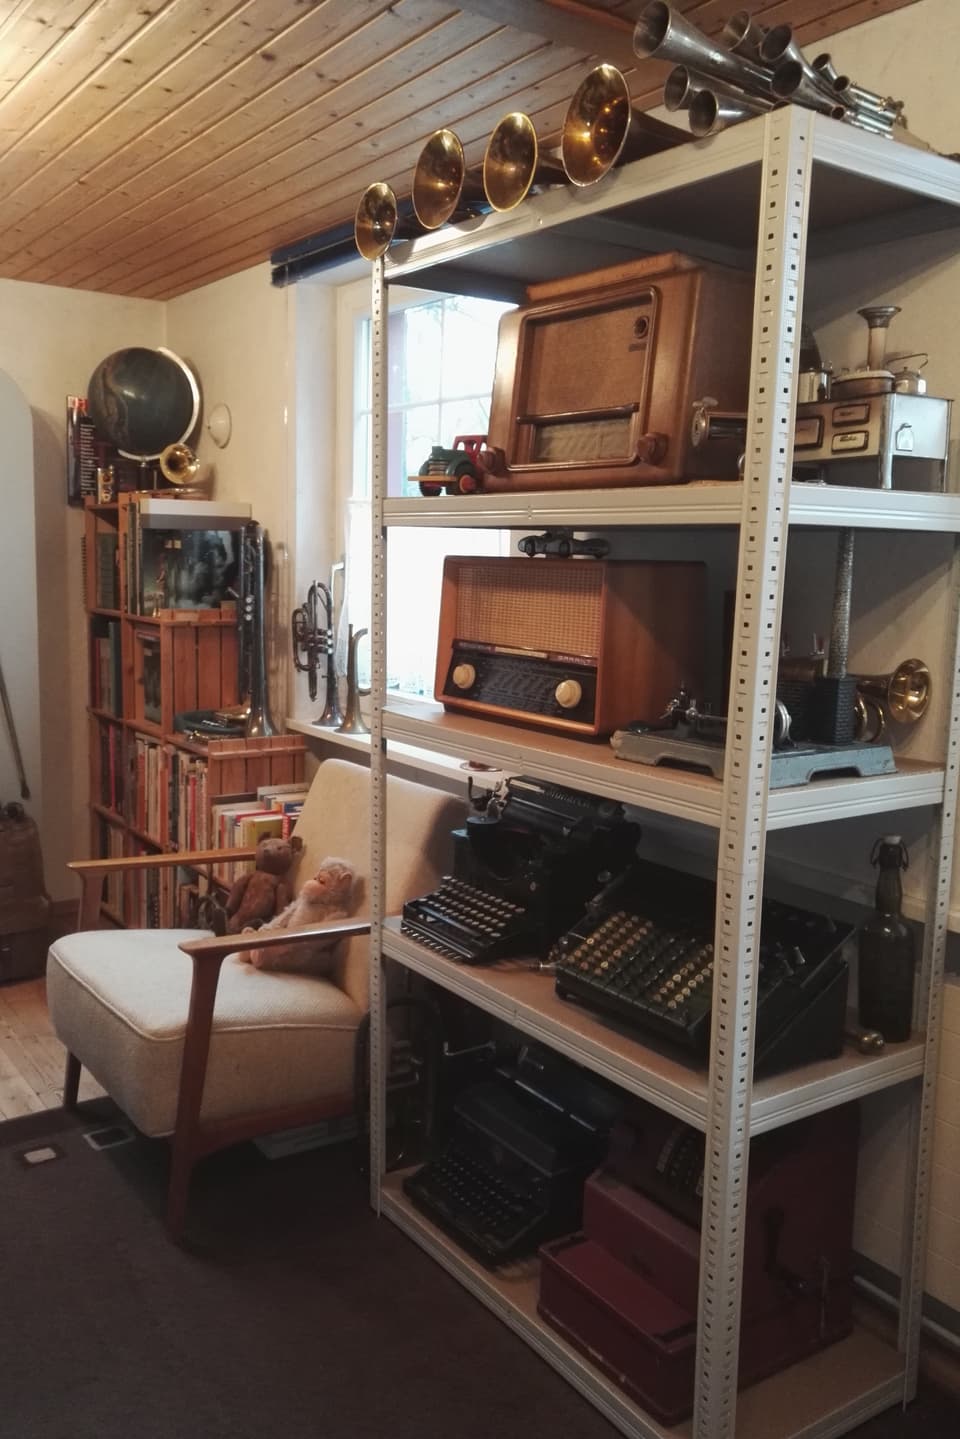 Sammlung von alten Radiogeräten, Schreibmaschinen etc.